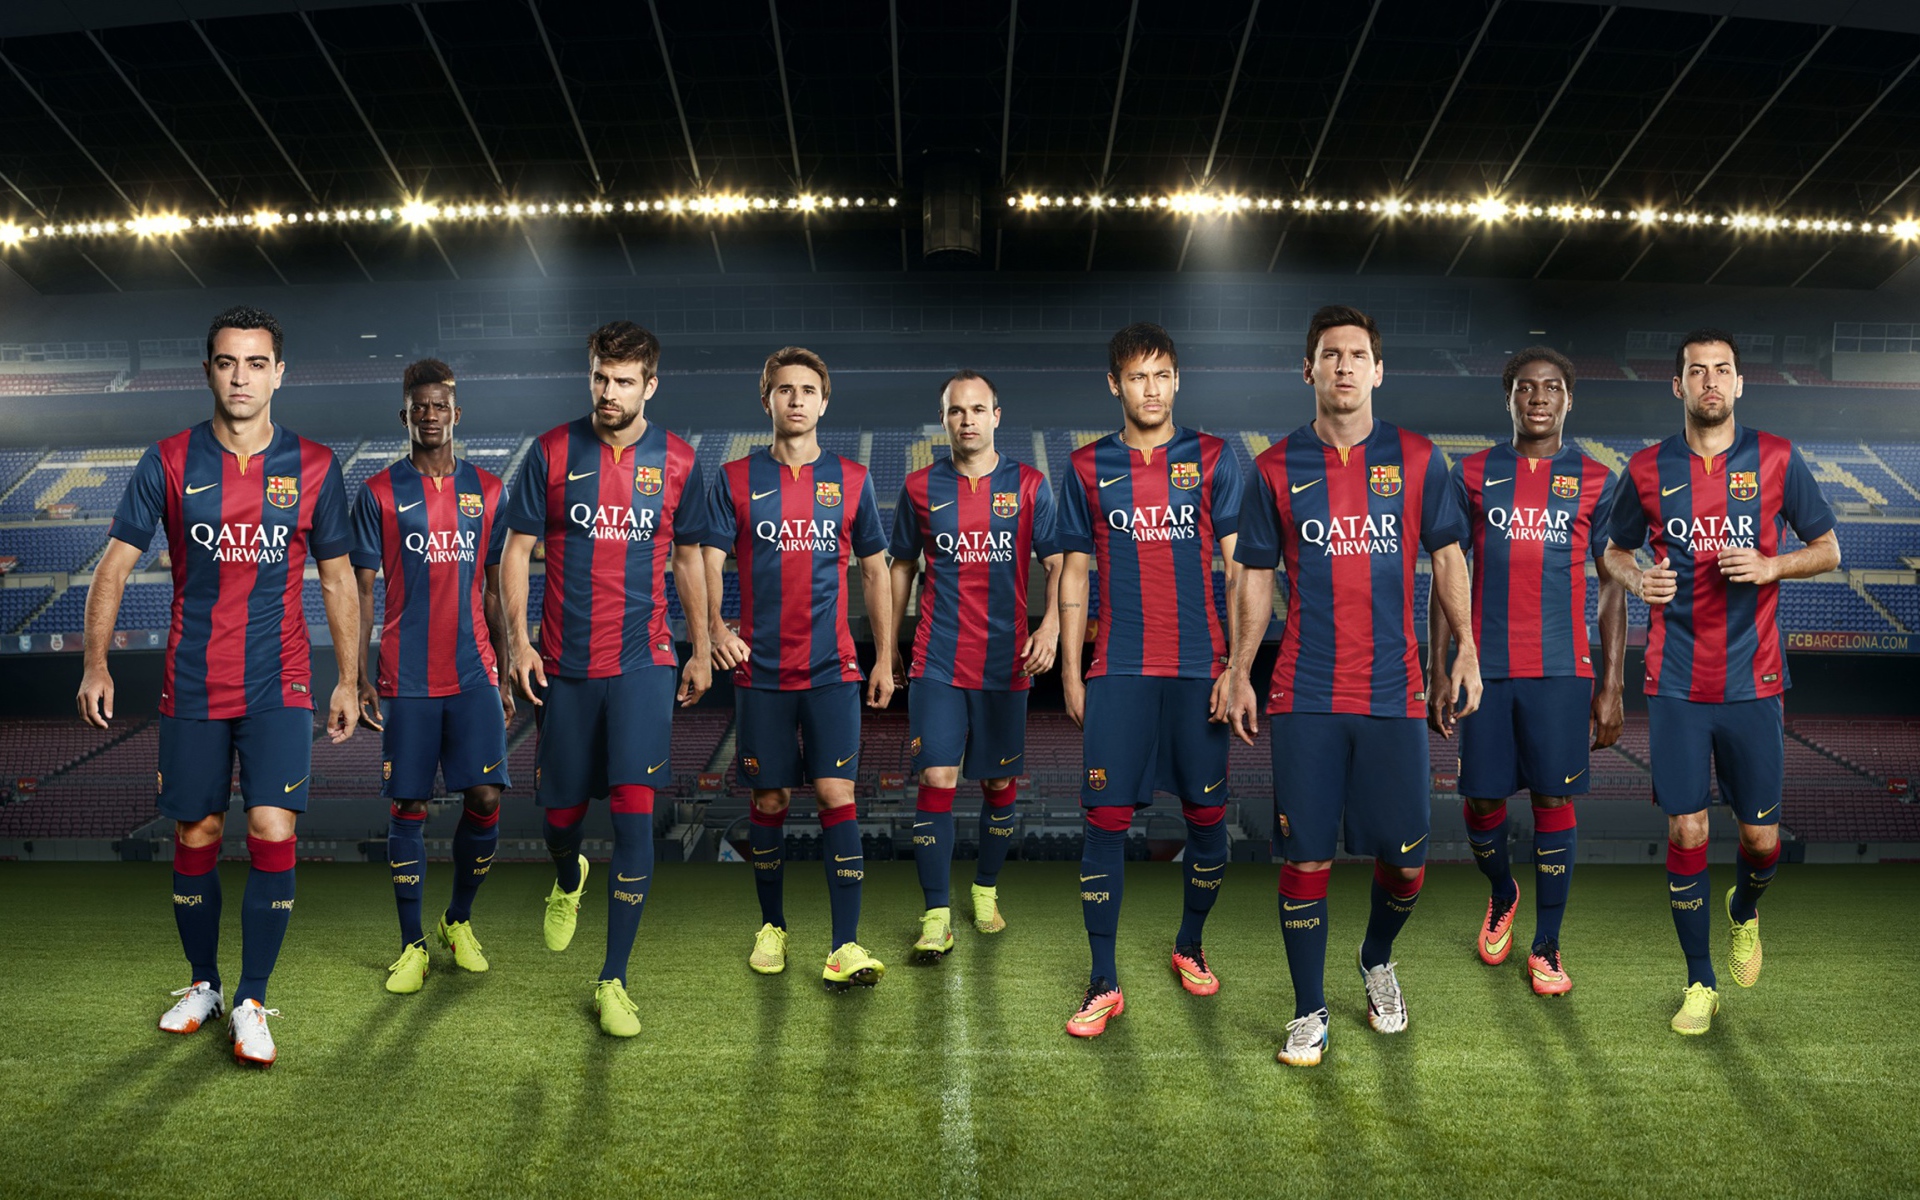 Футбольная команда футбольного клуба Барселона 